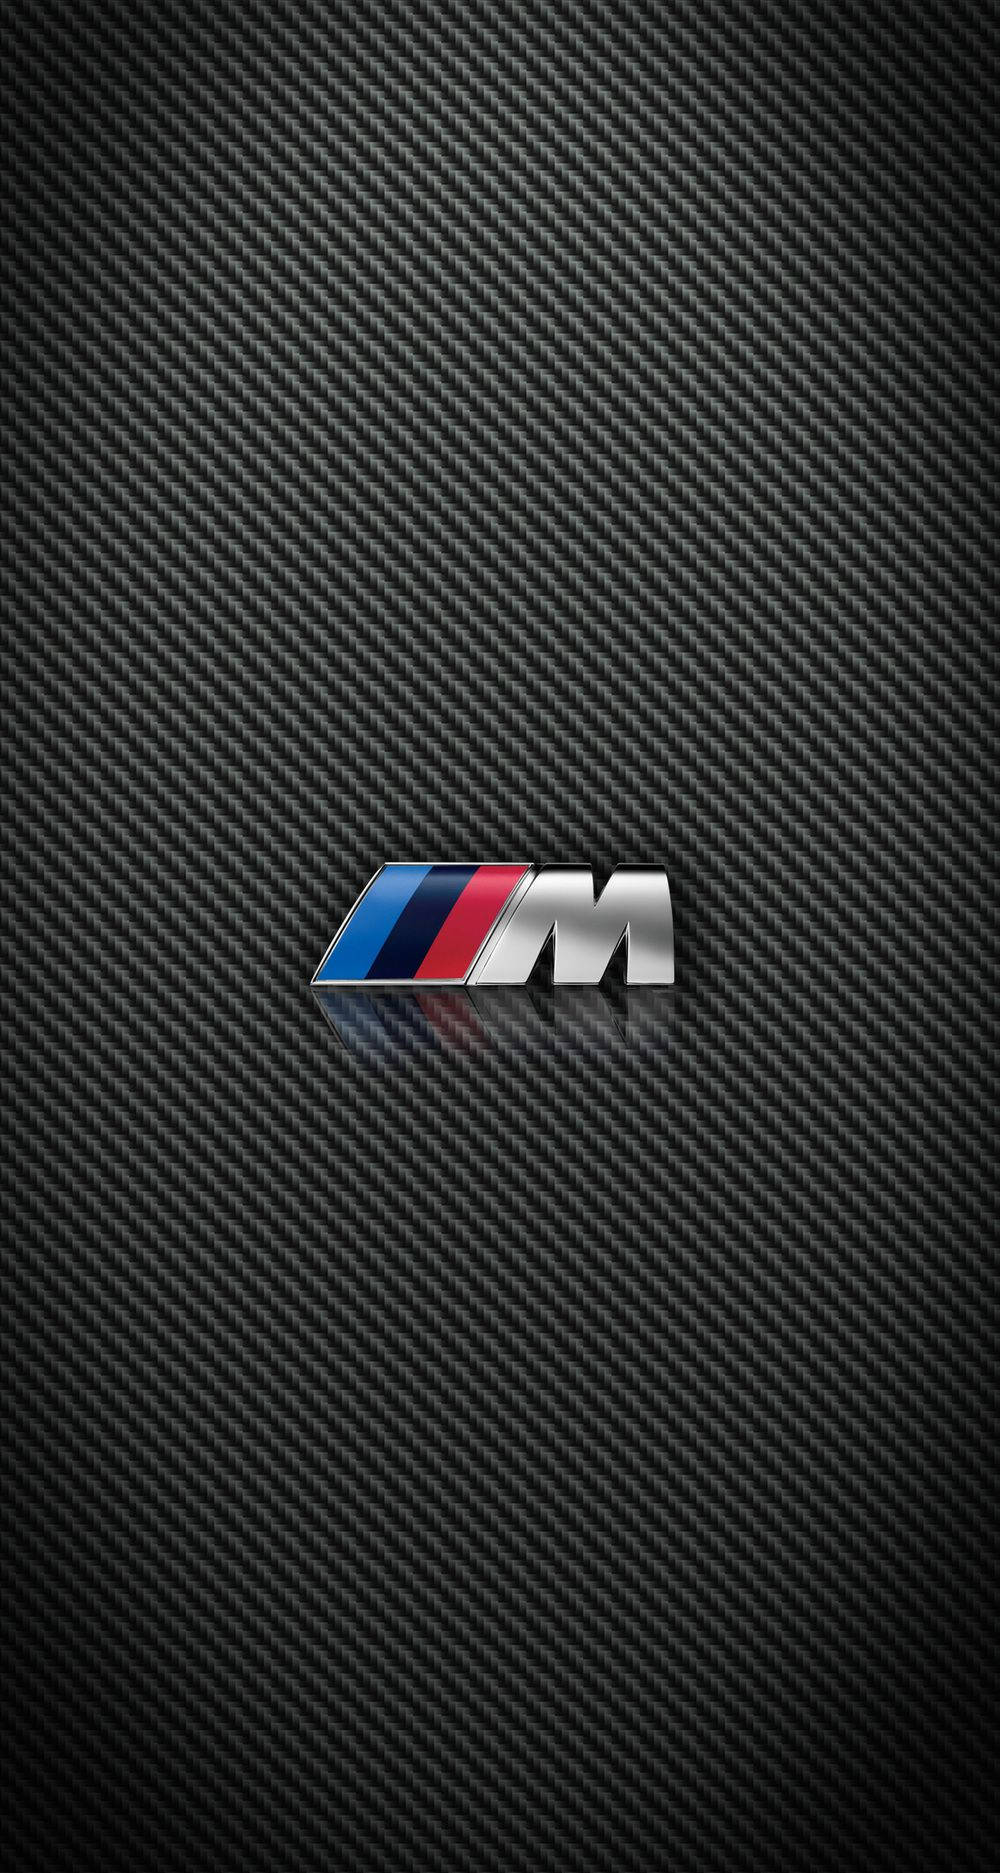 M3kol-logo Bmw Iphone X Wallpaper